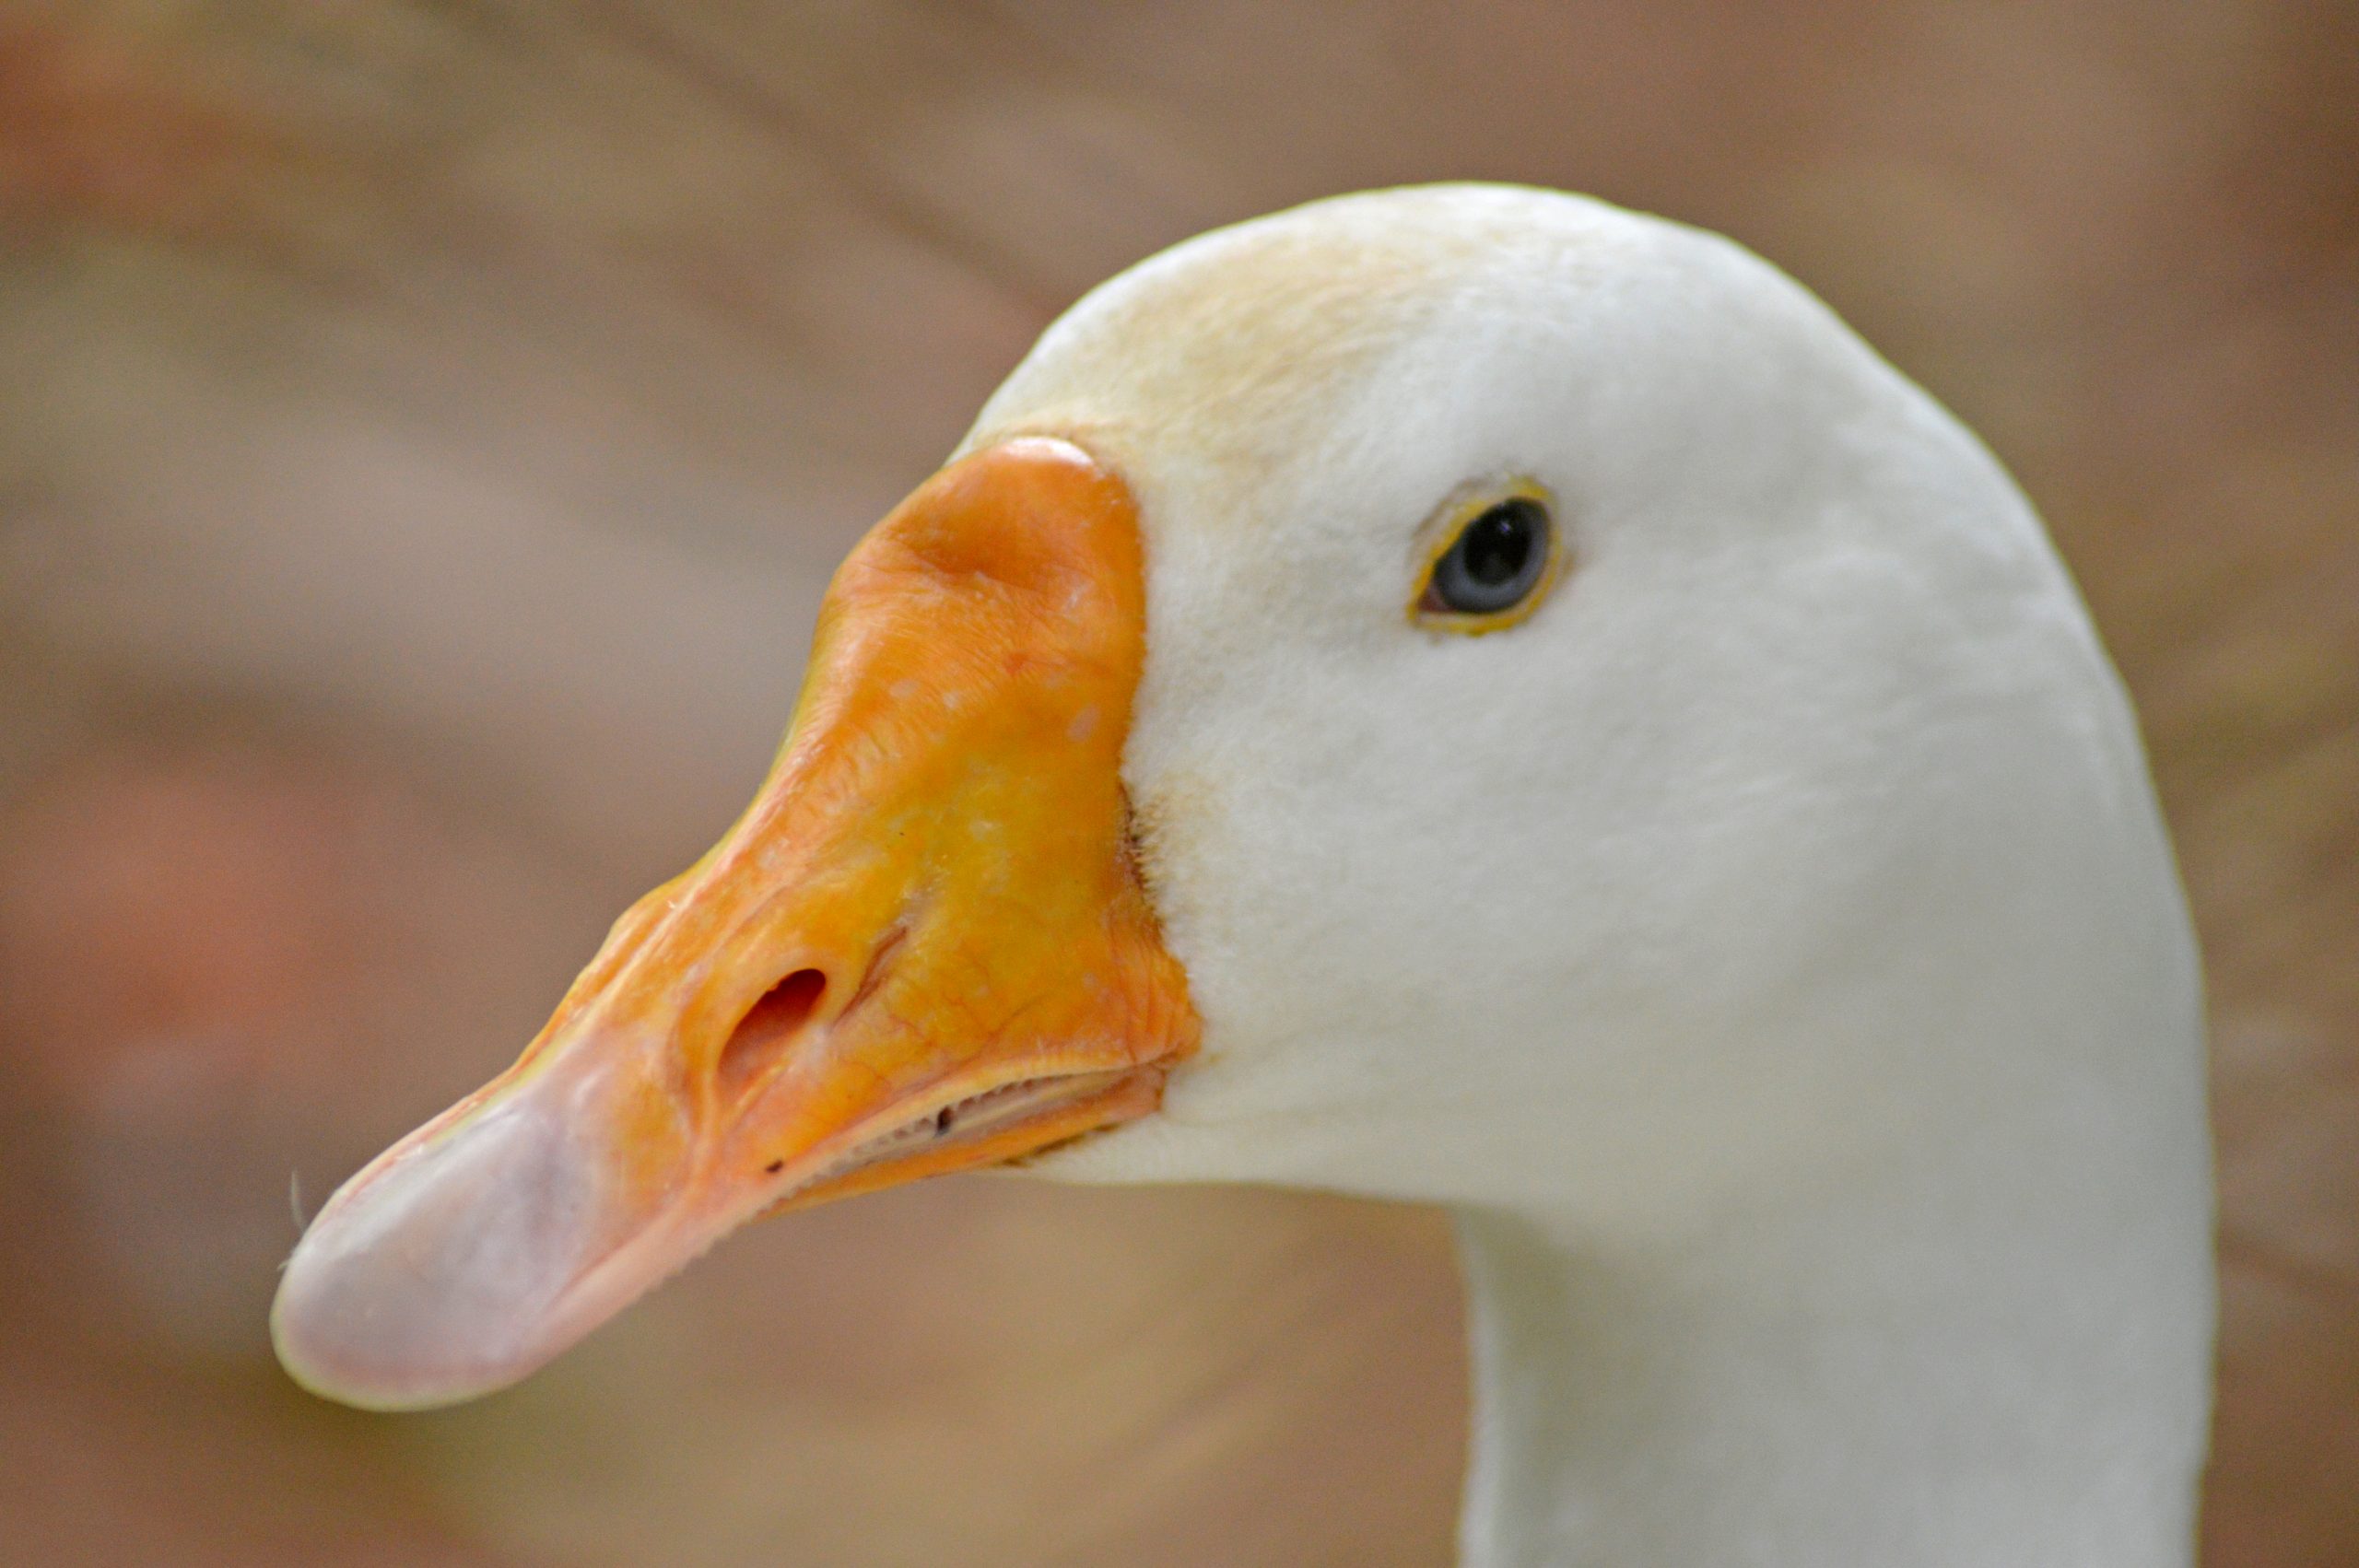 A duck head